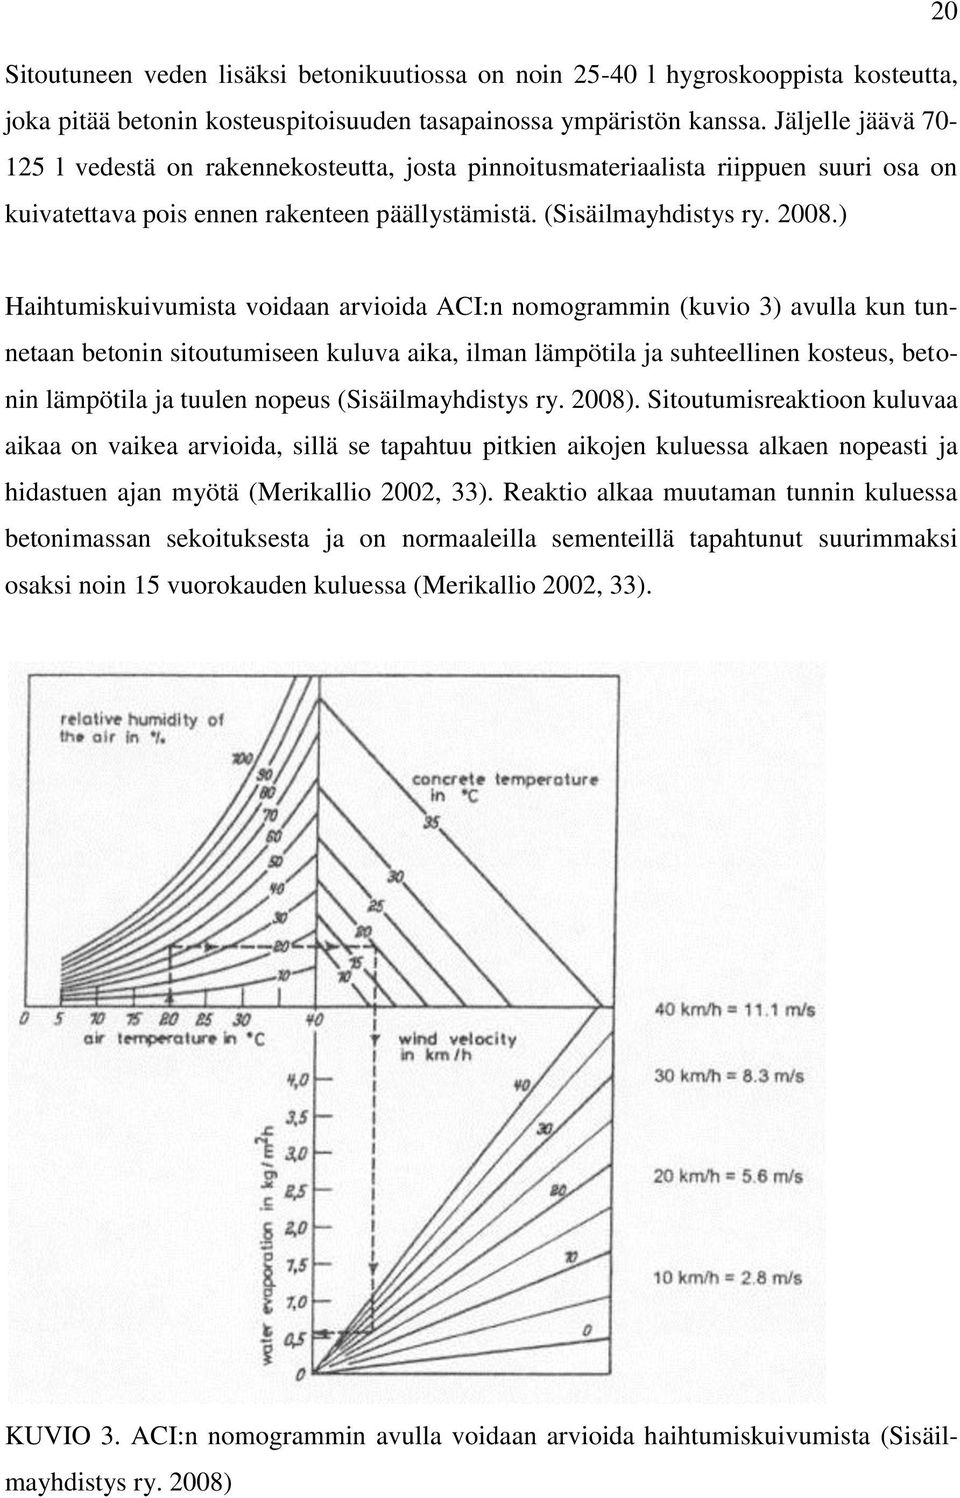 ) Haihtumiskuivumista voidaan arvioida ACI:n nomogrammin (kuvio 3) avulla kun tunnetaan betonin sitoutumiseen kuluva aika, ilman lämpötila ja suhteellinen kosteus, betonin lämpötila ja tuulen nopeus